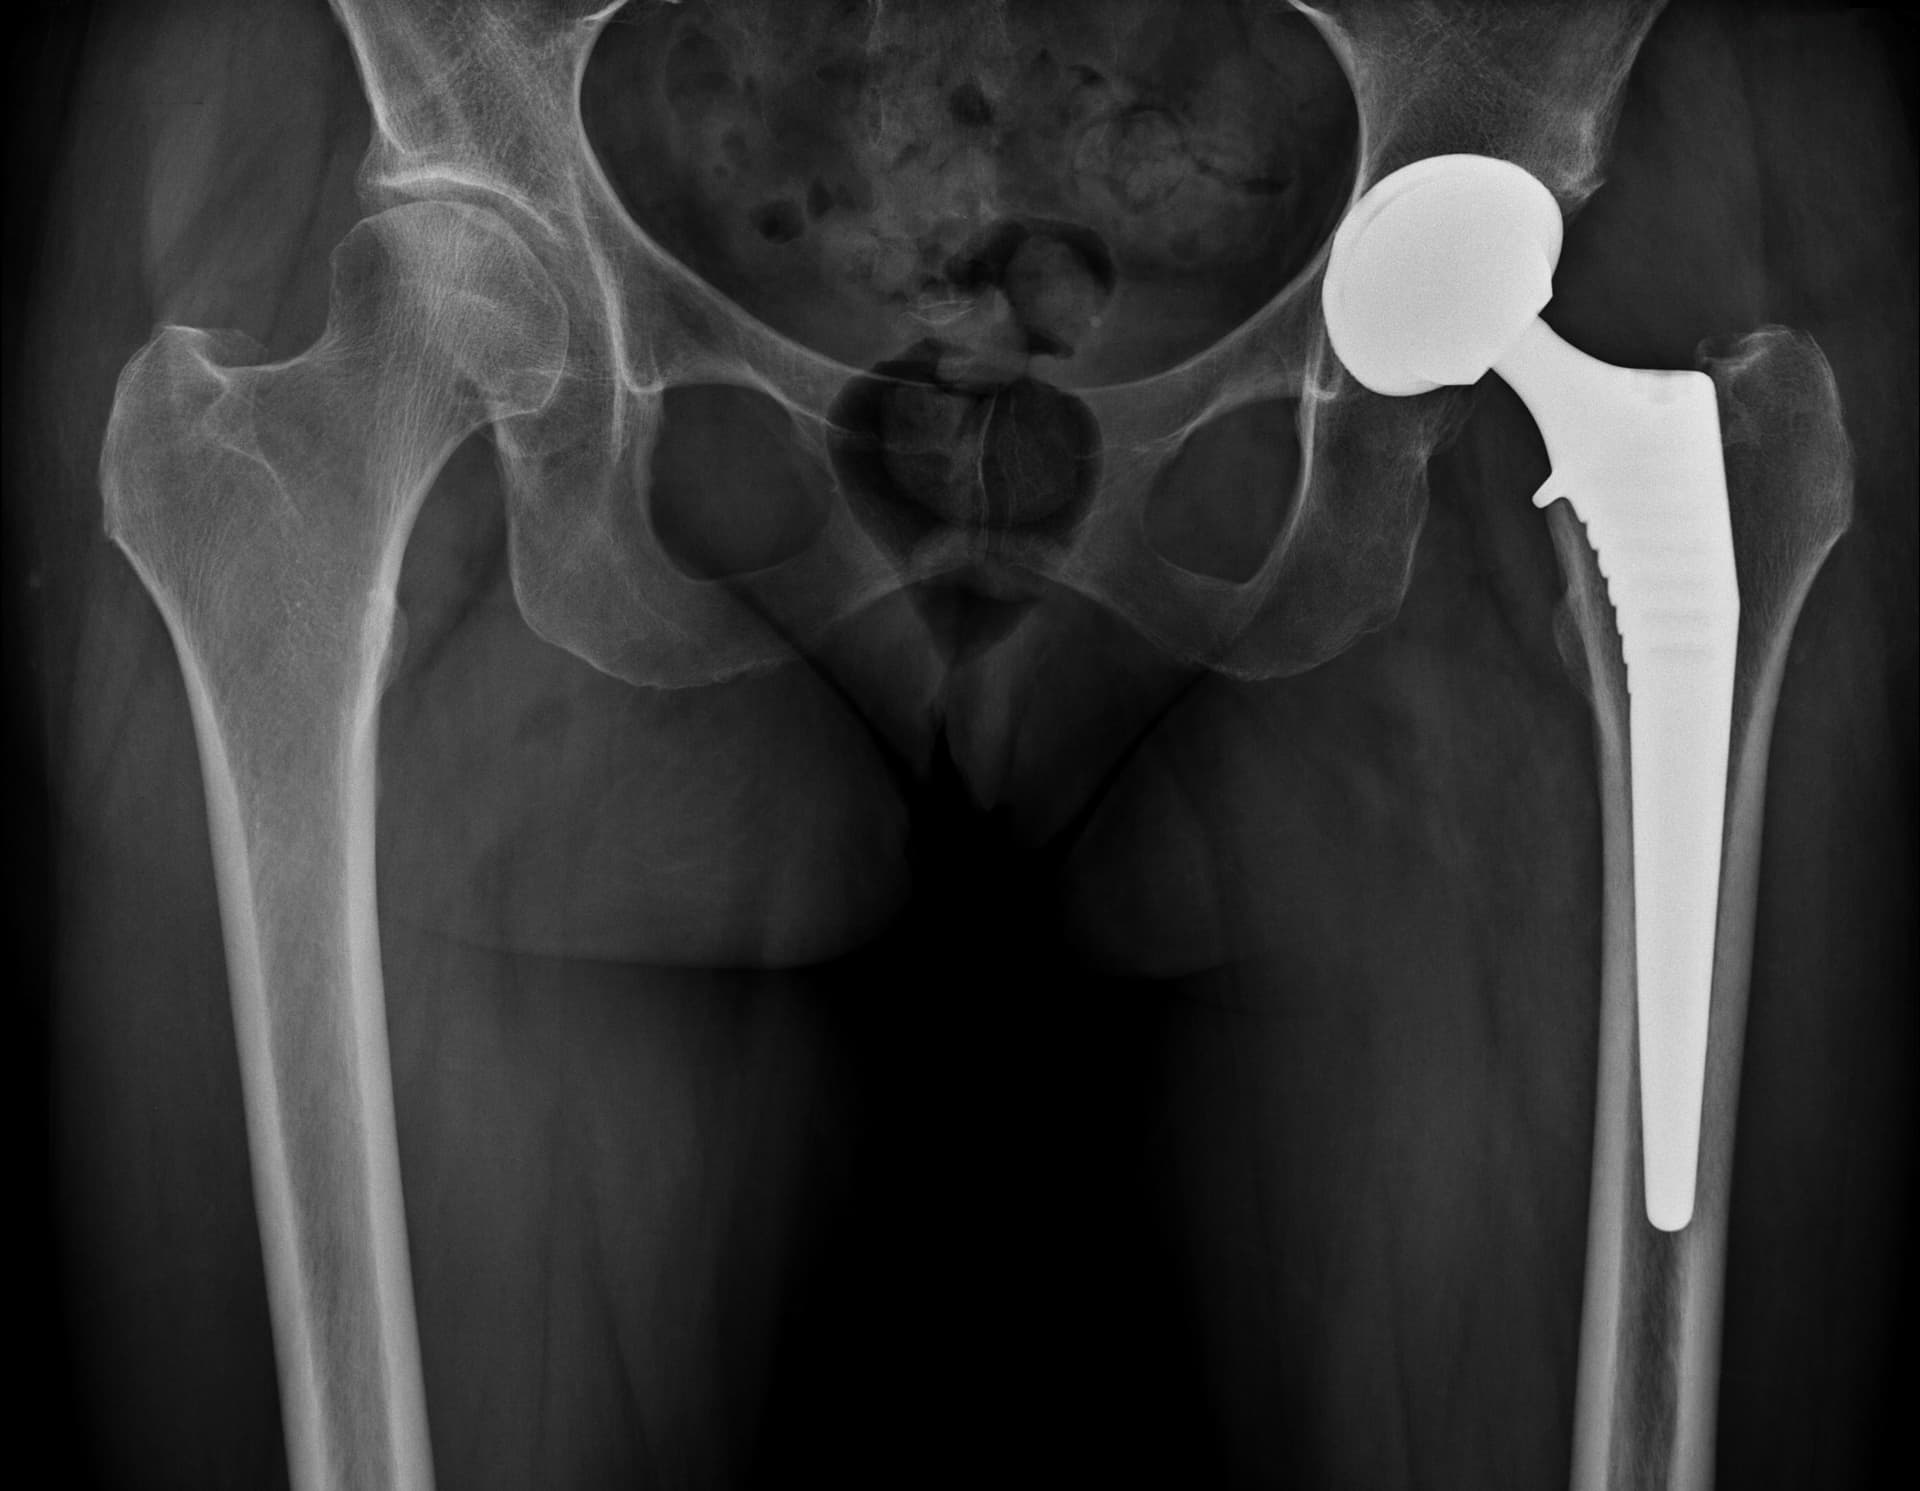 Radiographie post opératoire : pose d'une prothèse totale de hanche par voie antérieure mini invasive de type Bikin (prothèse non cimentée avec couple de frottement céramique/céramique).